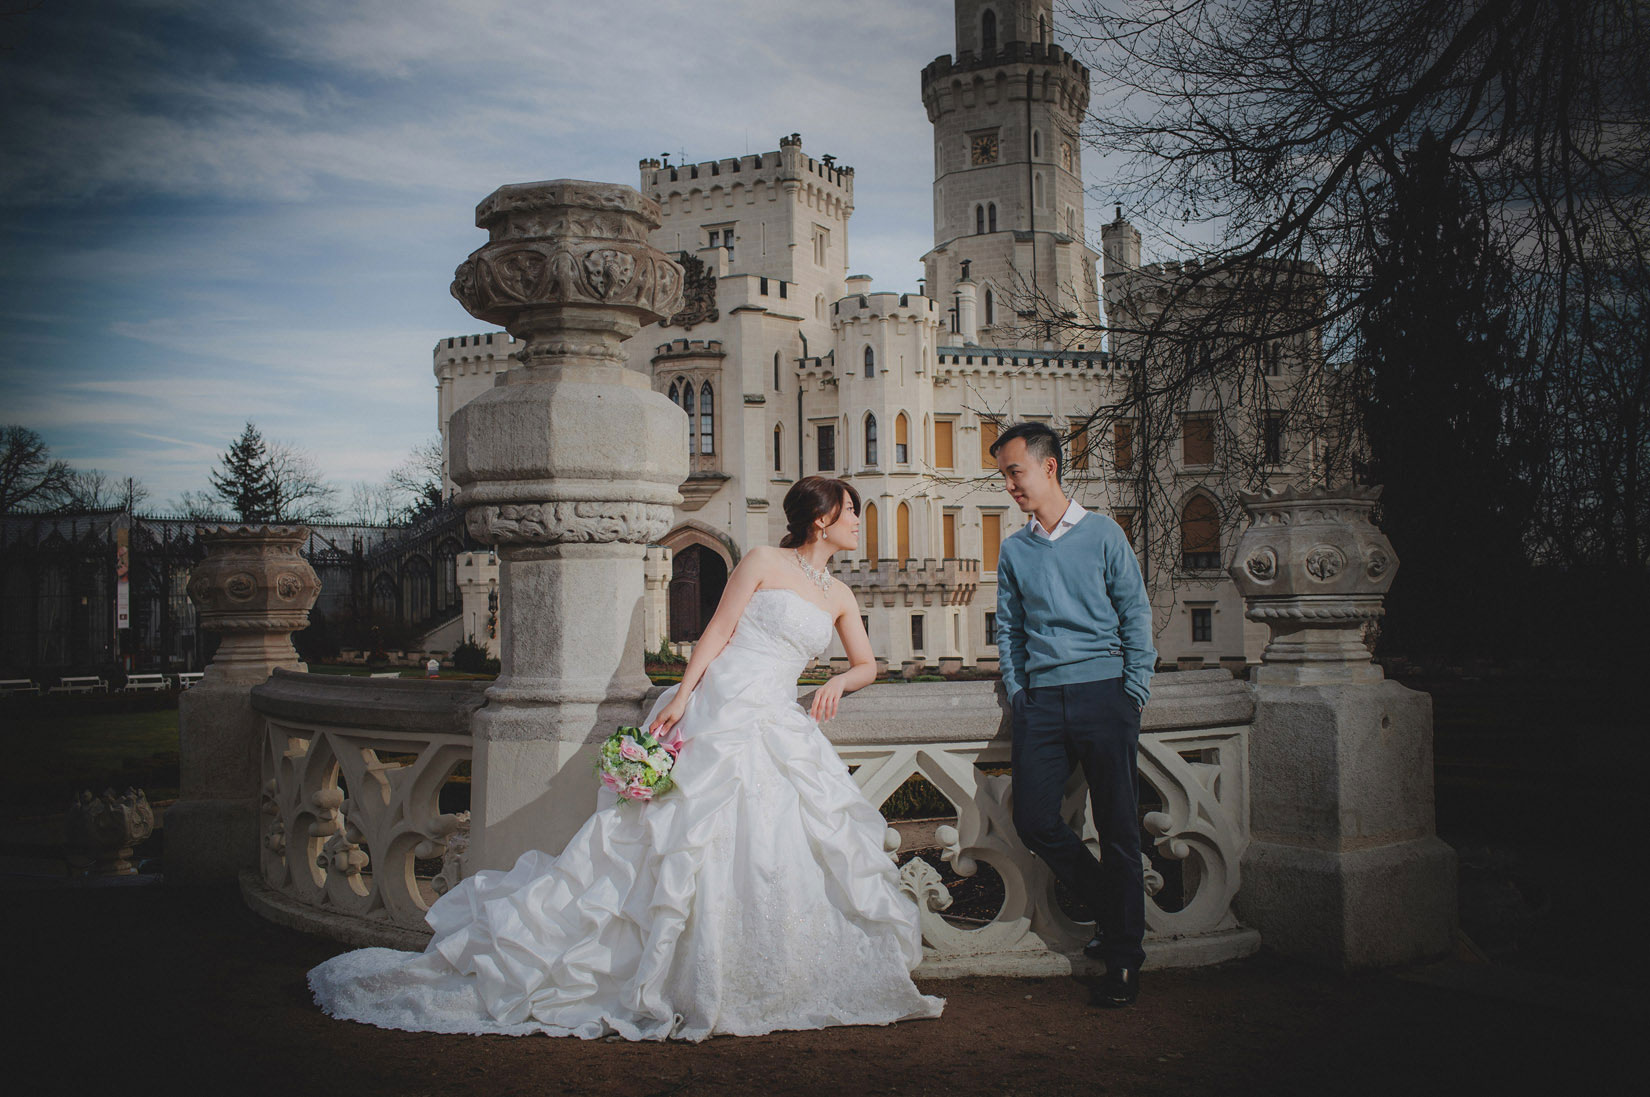 Castle Hluboka nad Vltavou pre wedding / Sandy & Jimmy / portrait session